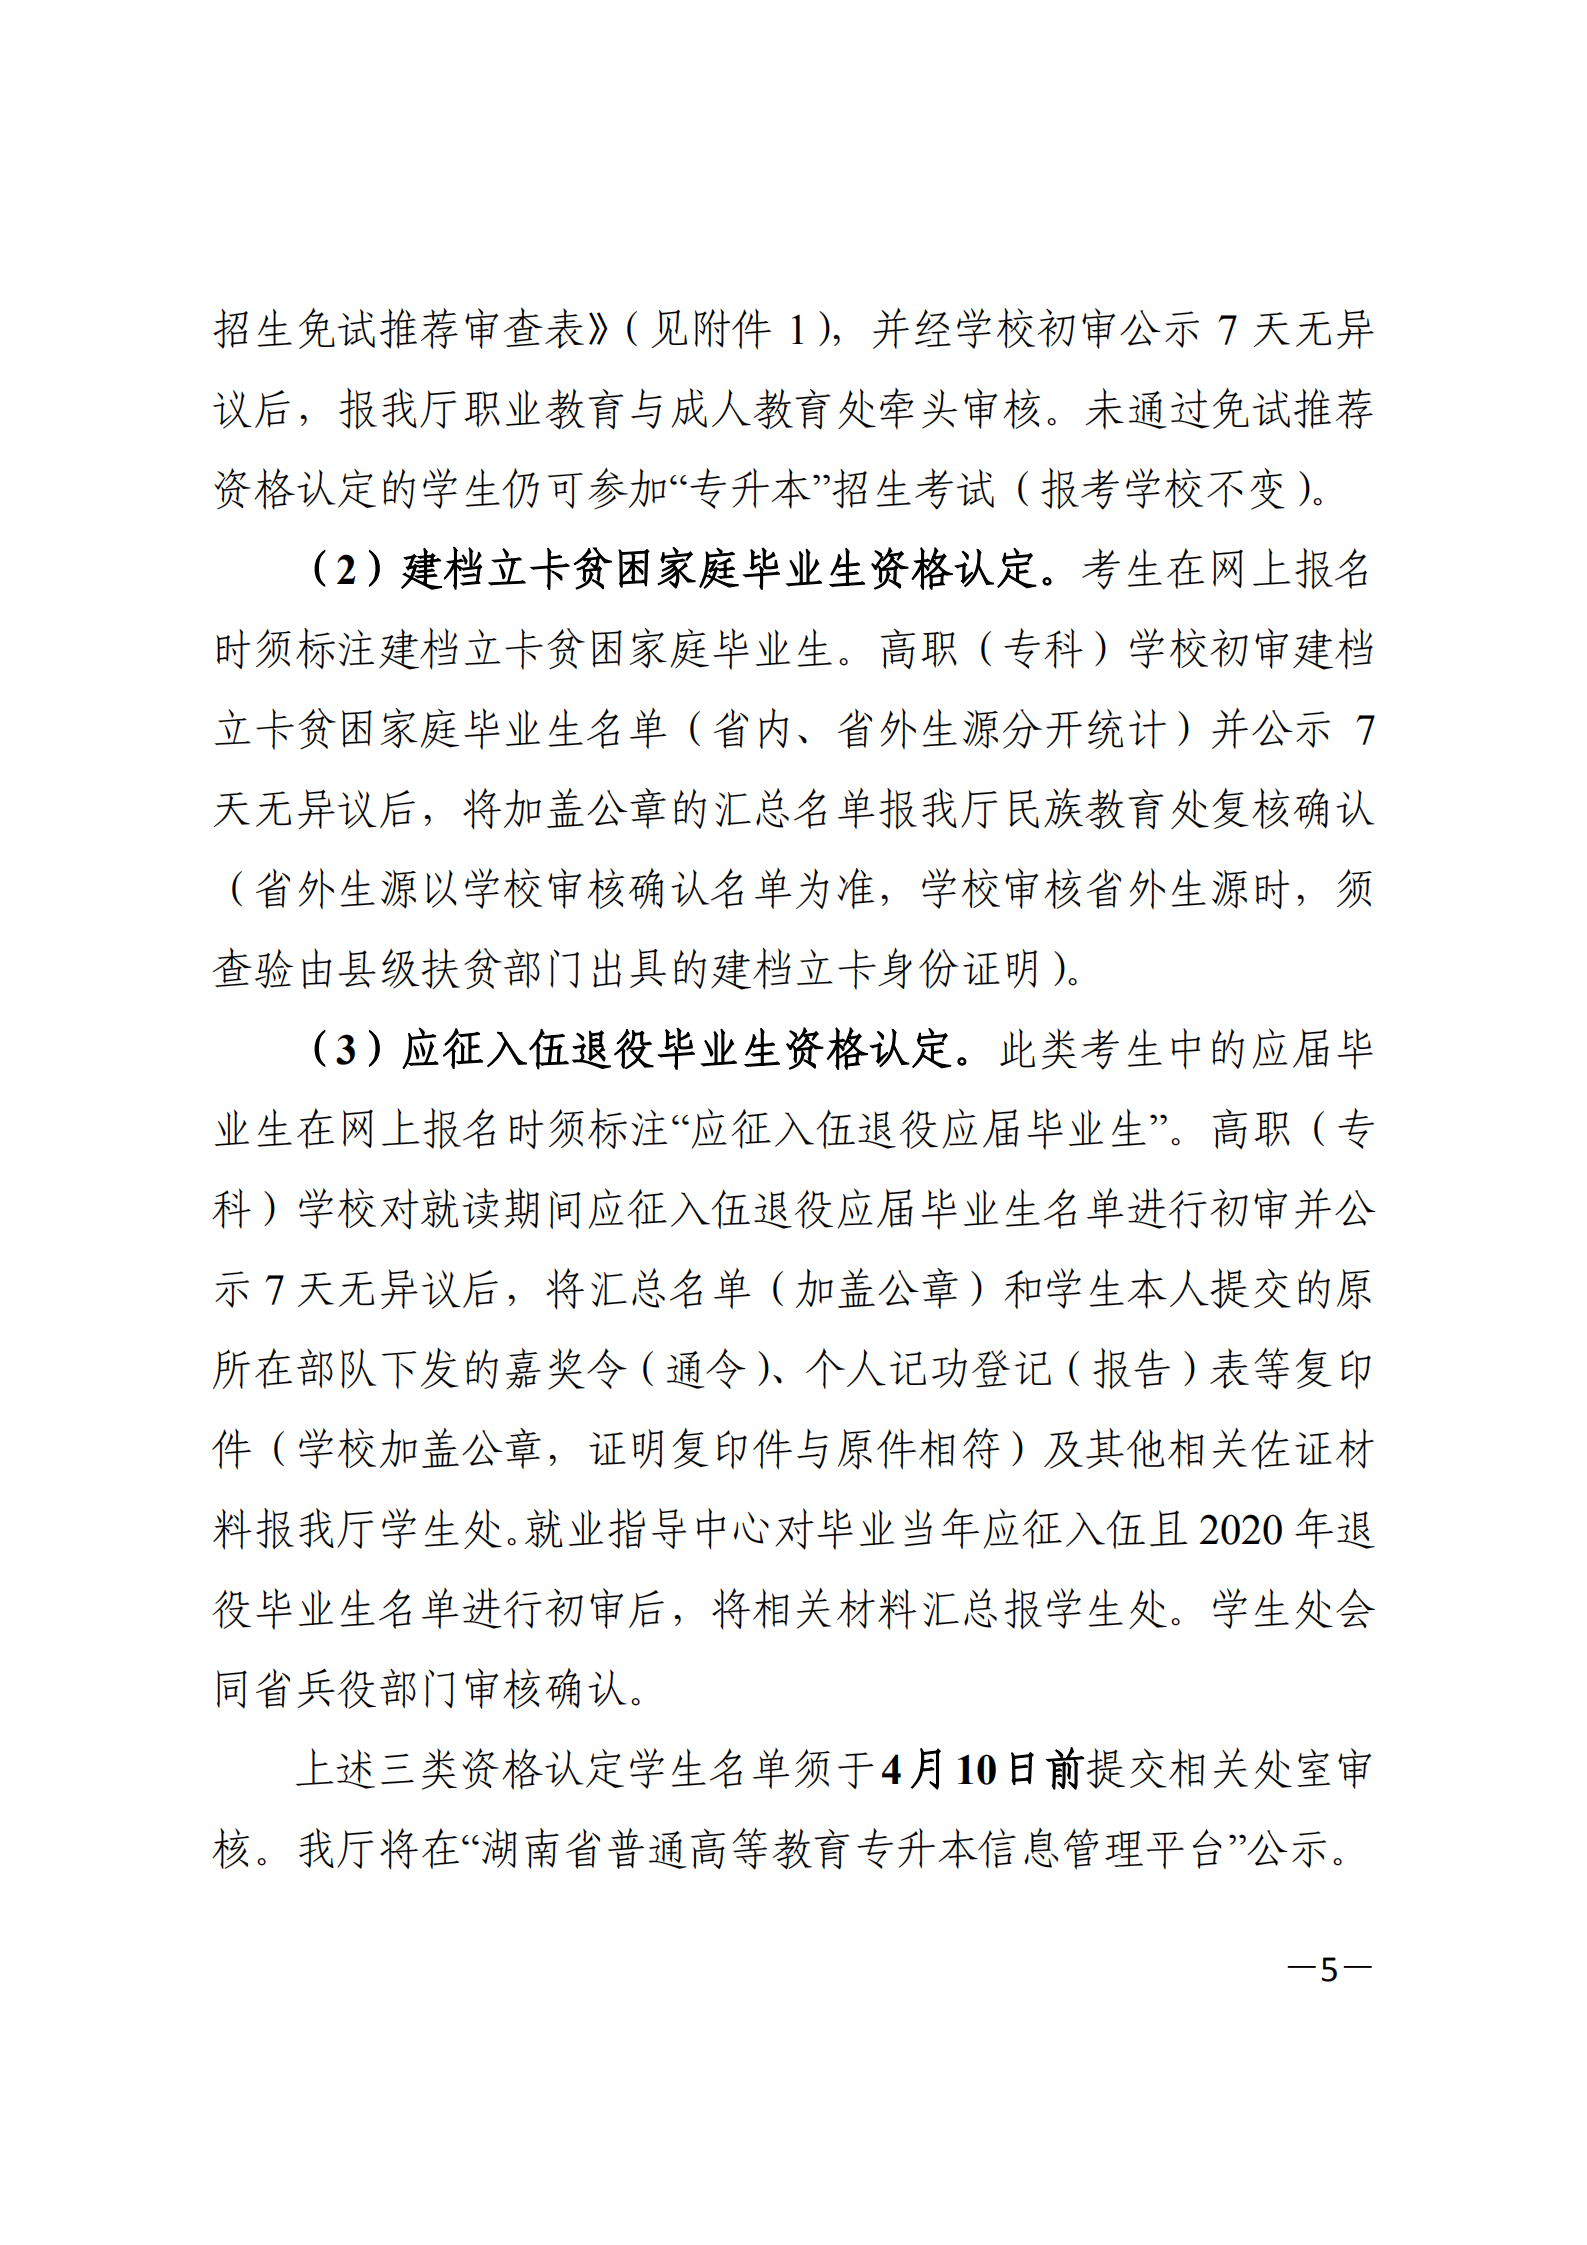 3_湘教发〔2021〕2号 关于印发《2021年湖南省普通高等教育“专升本”考试招生工作实施方案》的通知_04.png